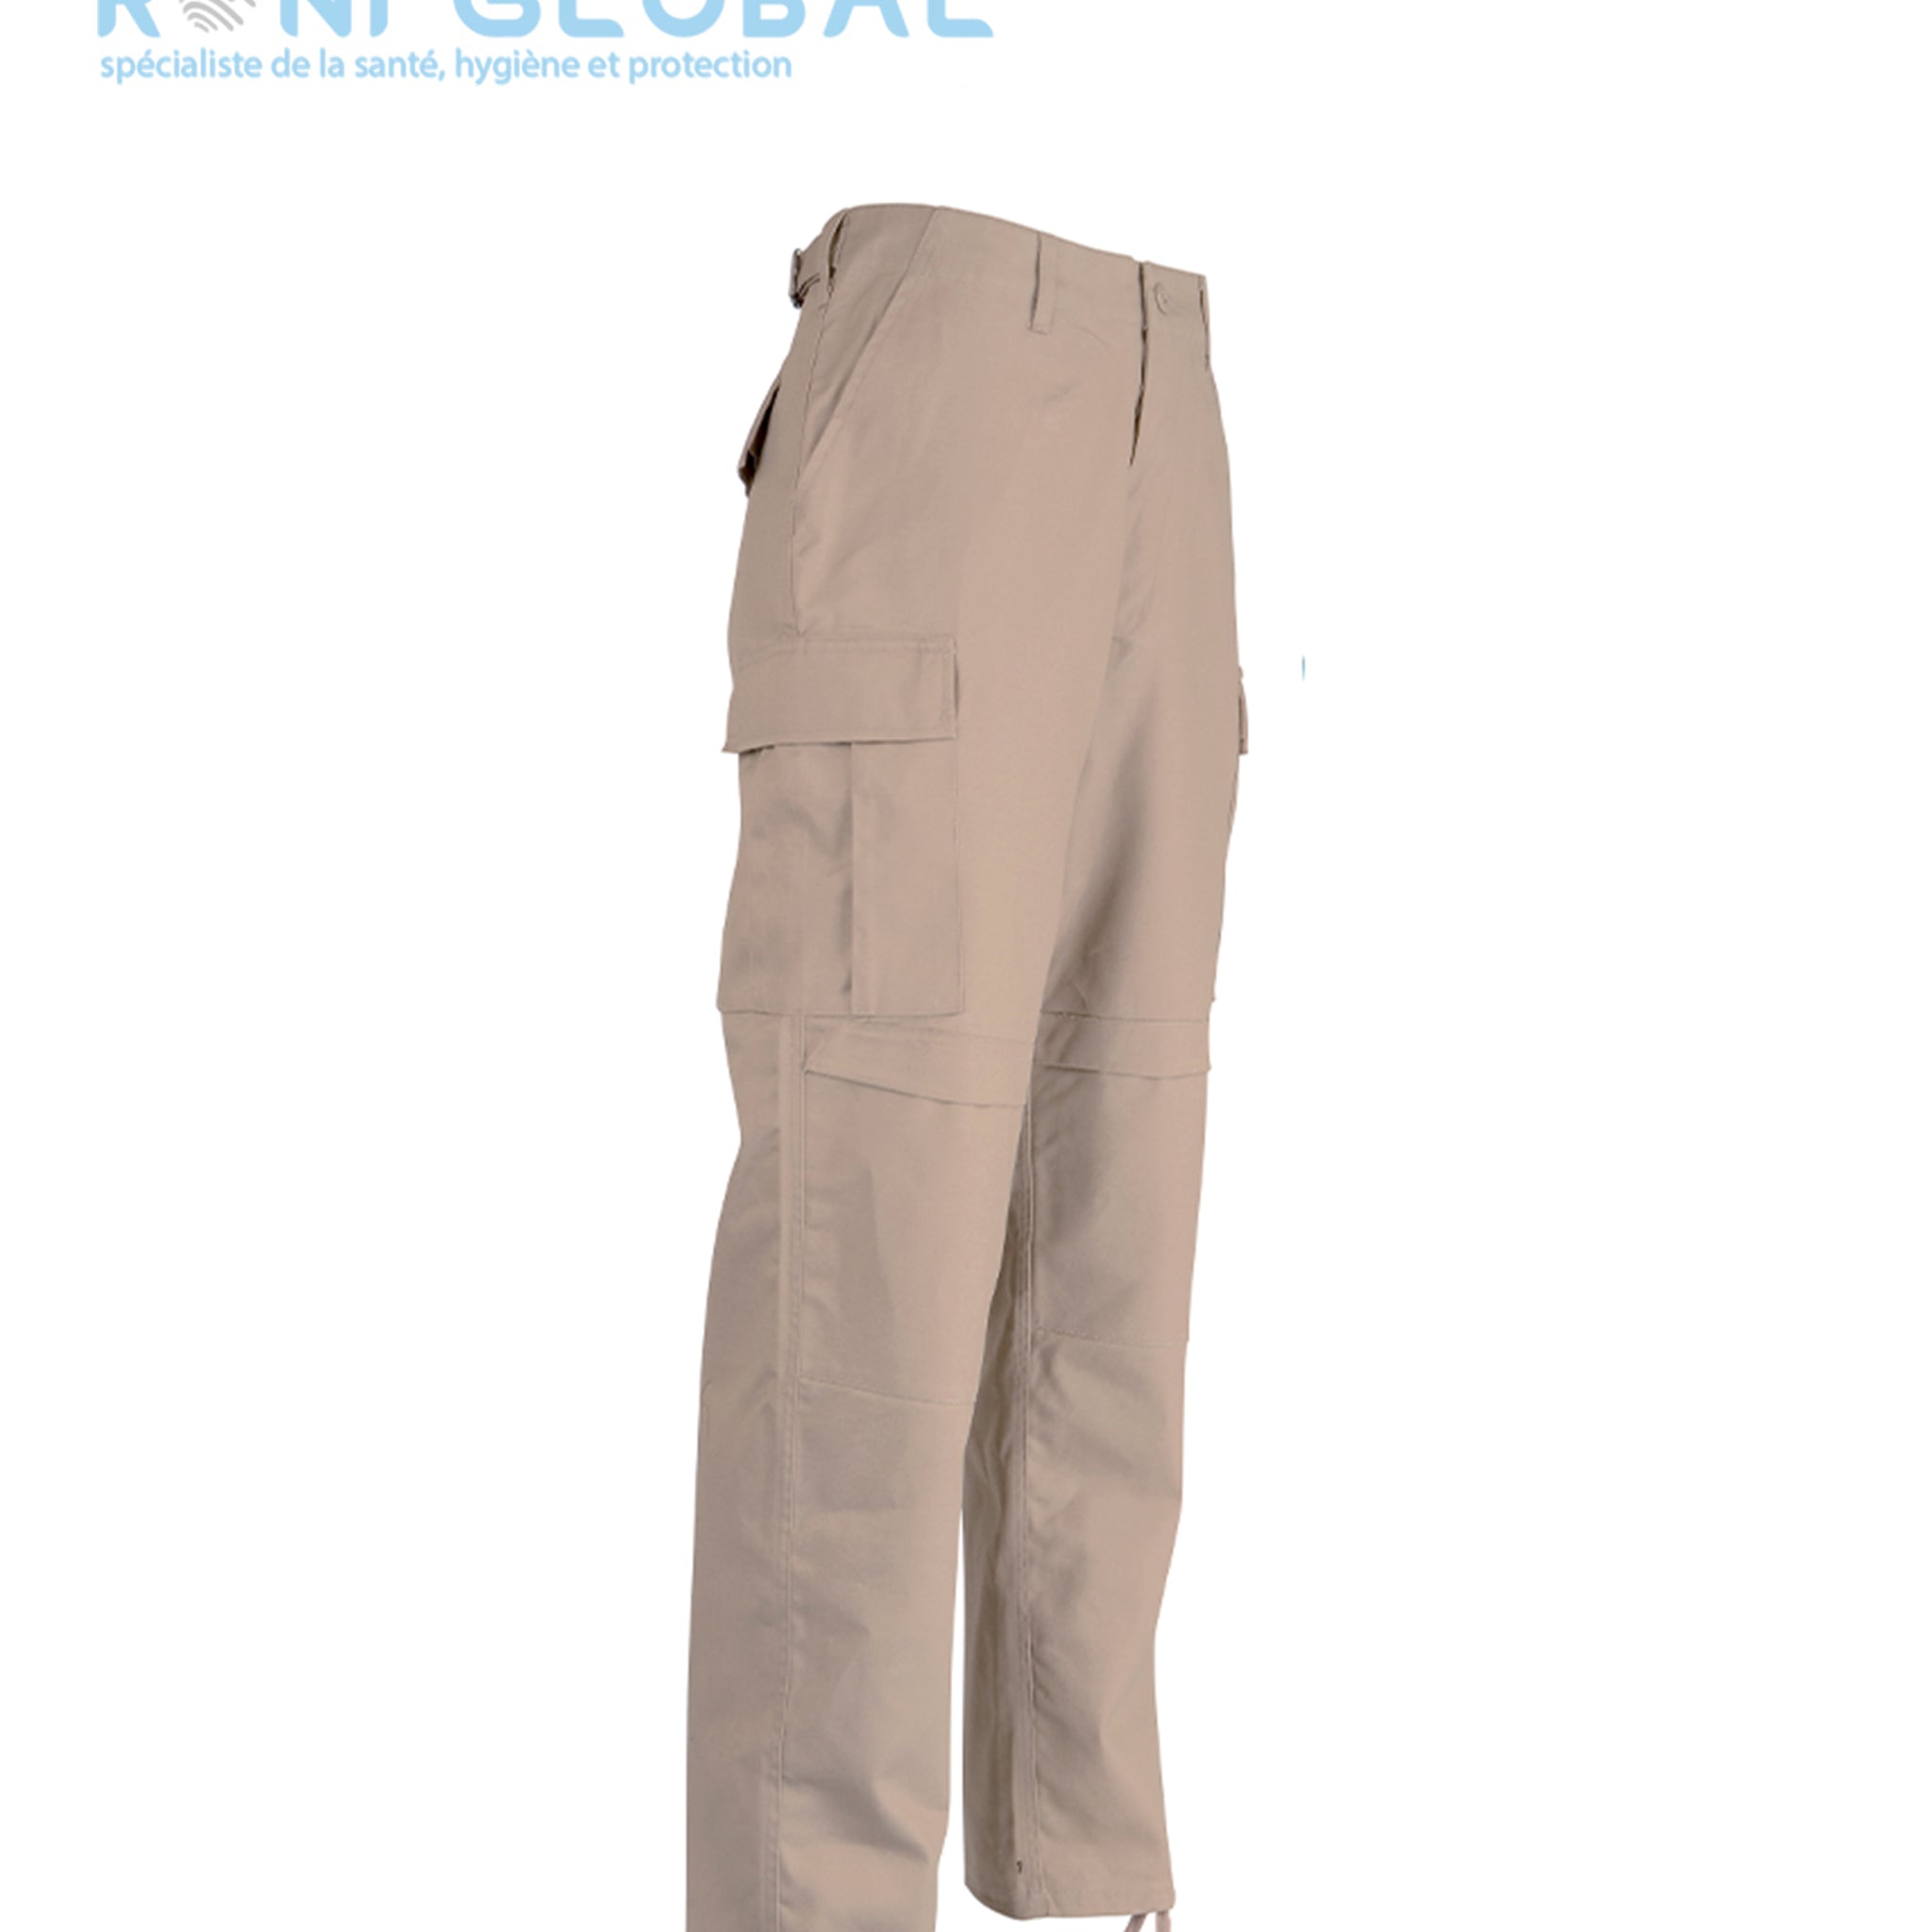 Pantalon de travail avec renforts aux genoux et entre-jambe, en coton et polyester 6 poches - PANTALON BDU CITYGUARD